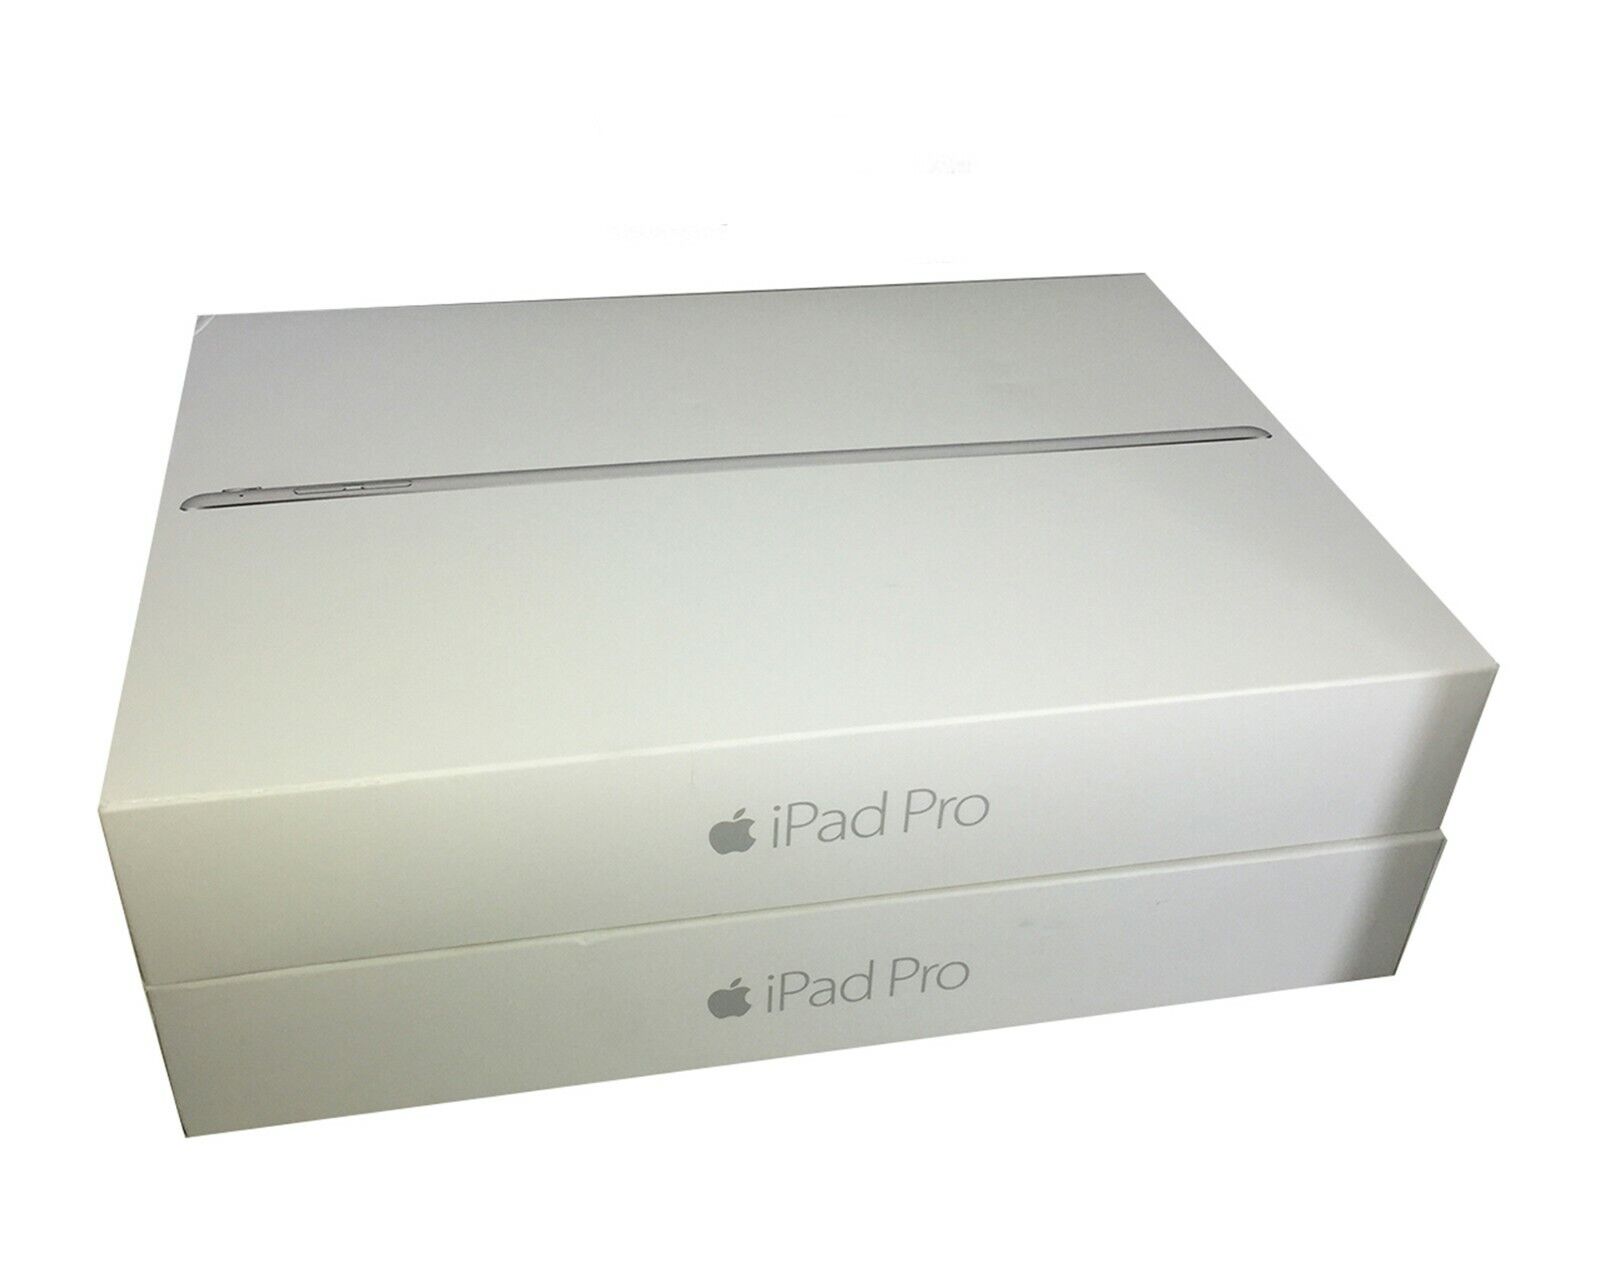 Apple iPad Pro, Gold, Wi-Fi +4G Unlocked, 32GB, 12.9-inch, Plus Original Box